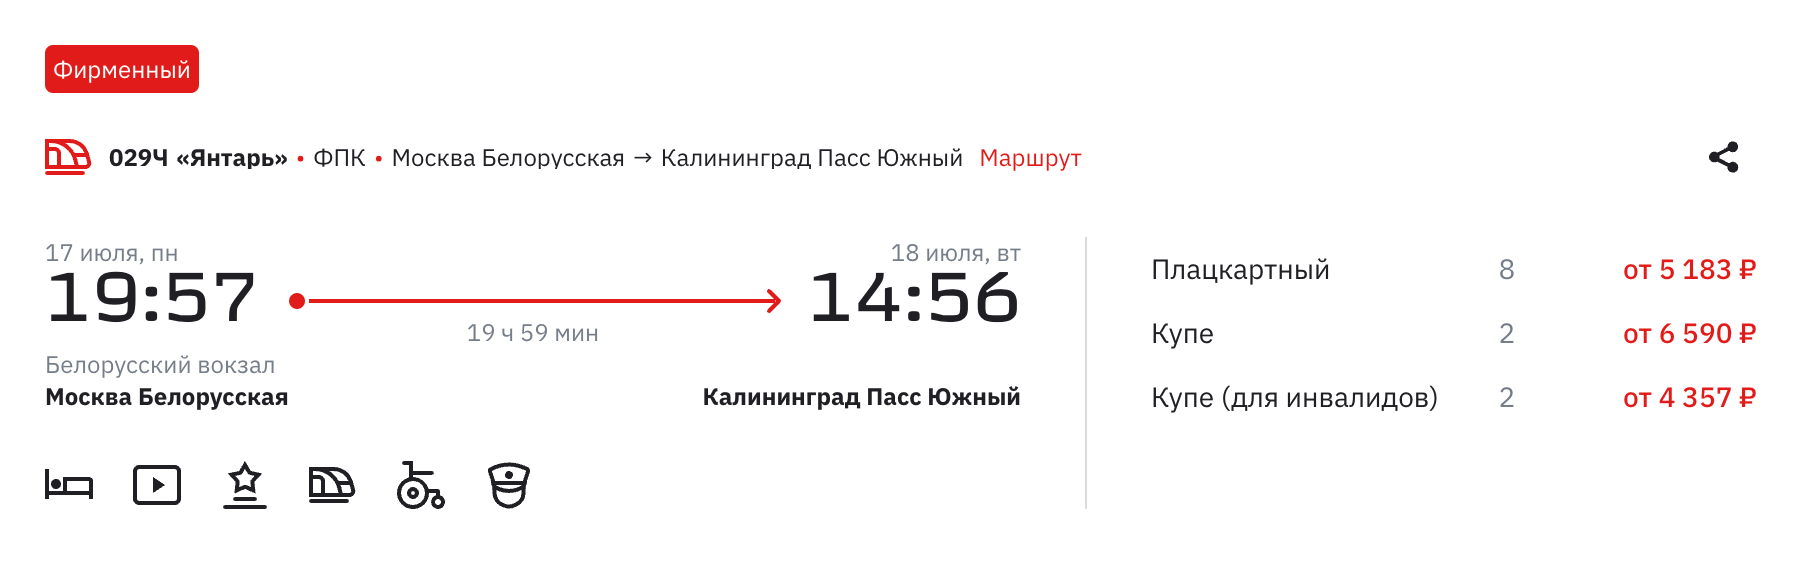 Билет на поезд Москва — Калининград обойдется от 5183 ₽. Источник: ticket.rzd.ru